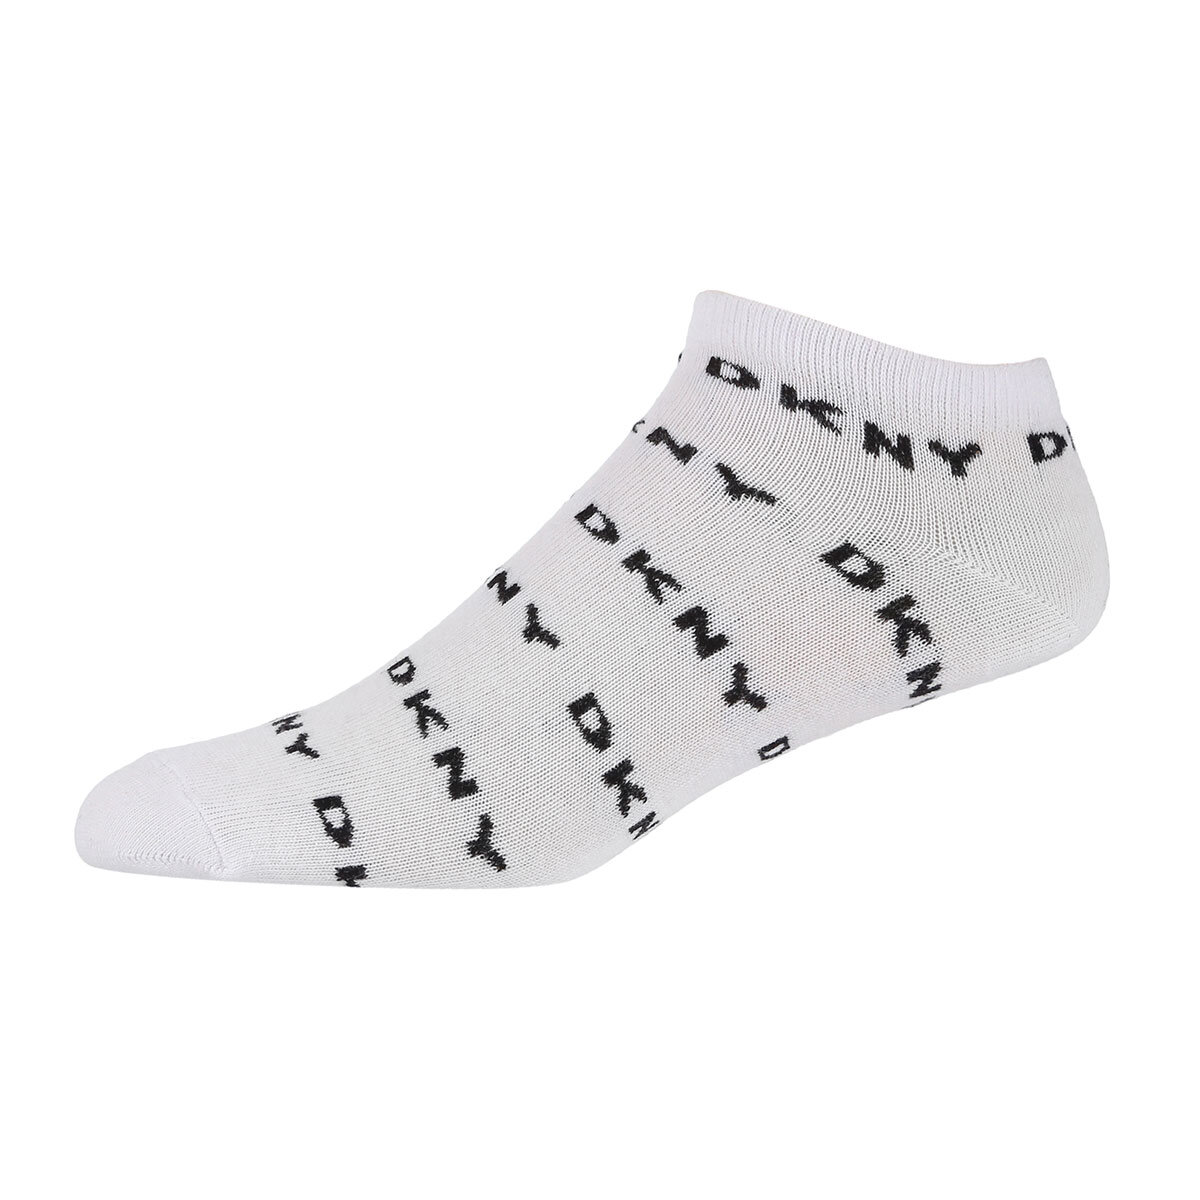 white sock